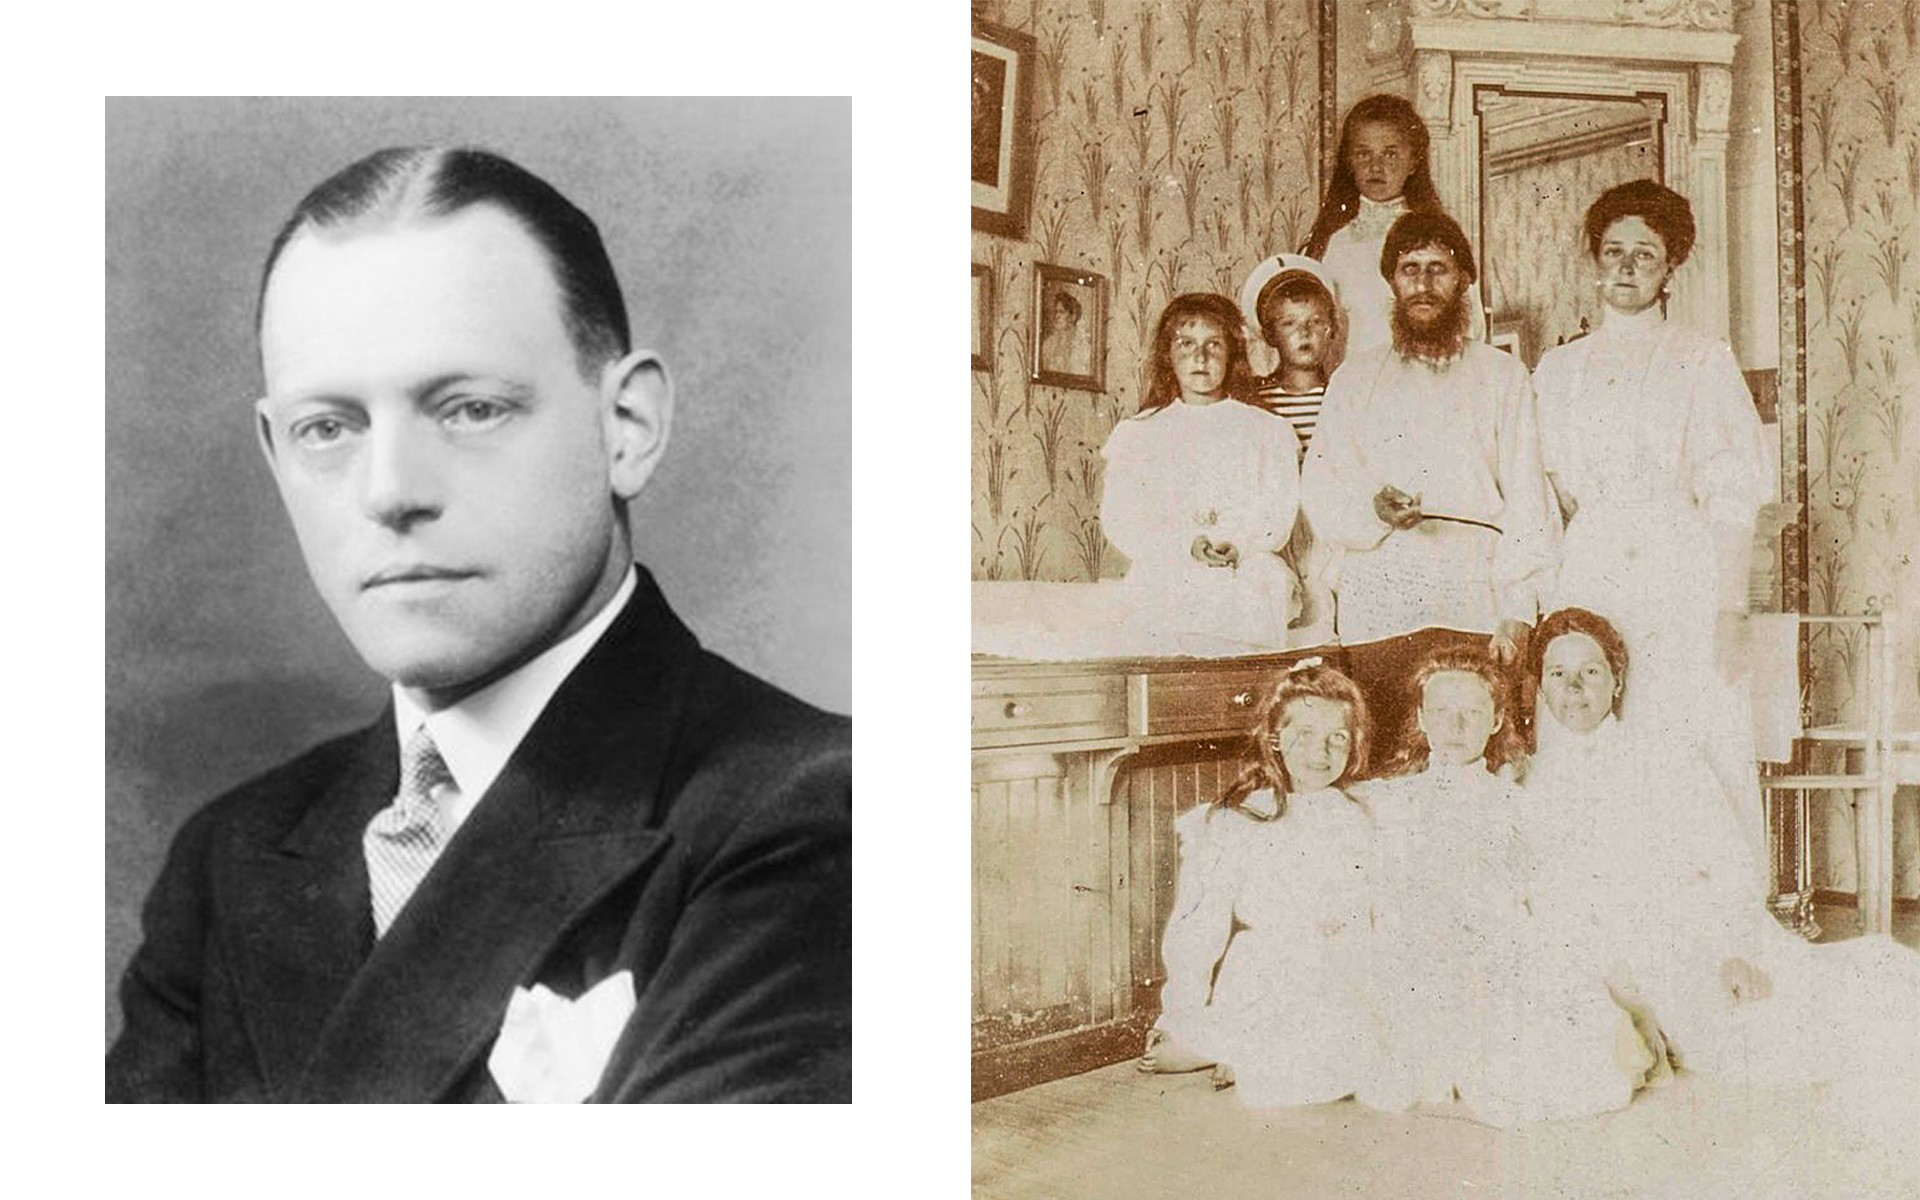 Освальд Райнер, 1908 год. Царское село. Распутин с императрицей, пятью детьми и гувернанткой